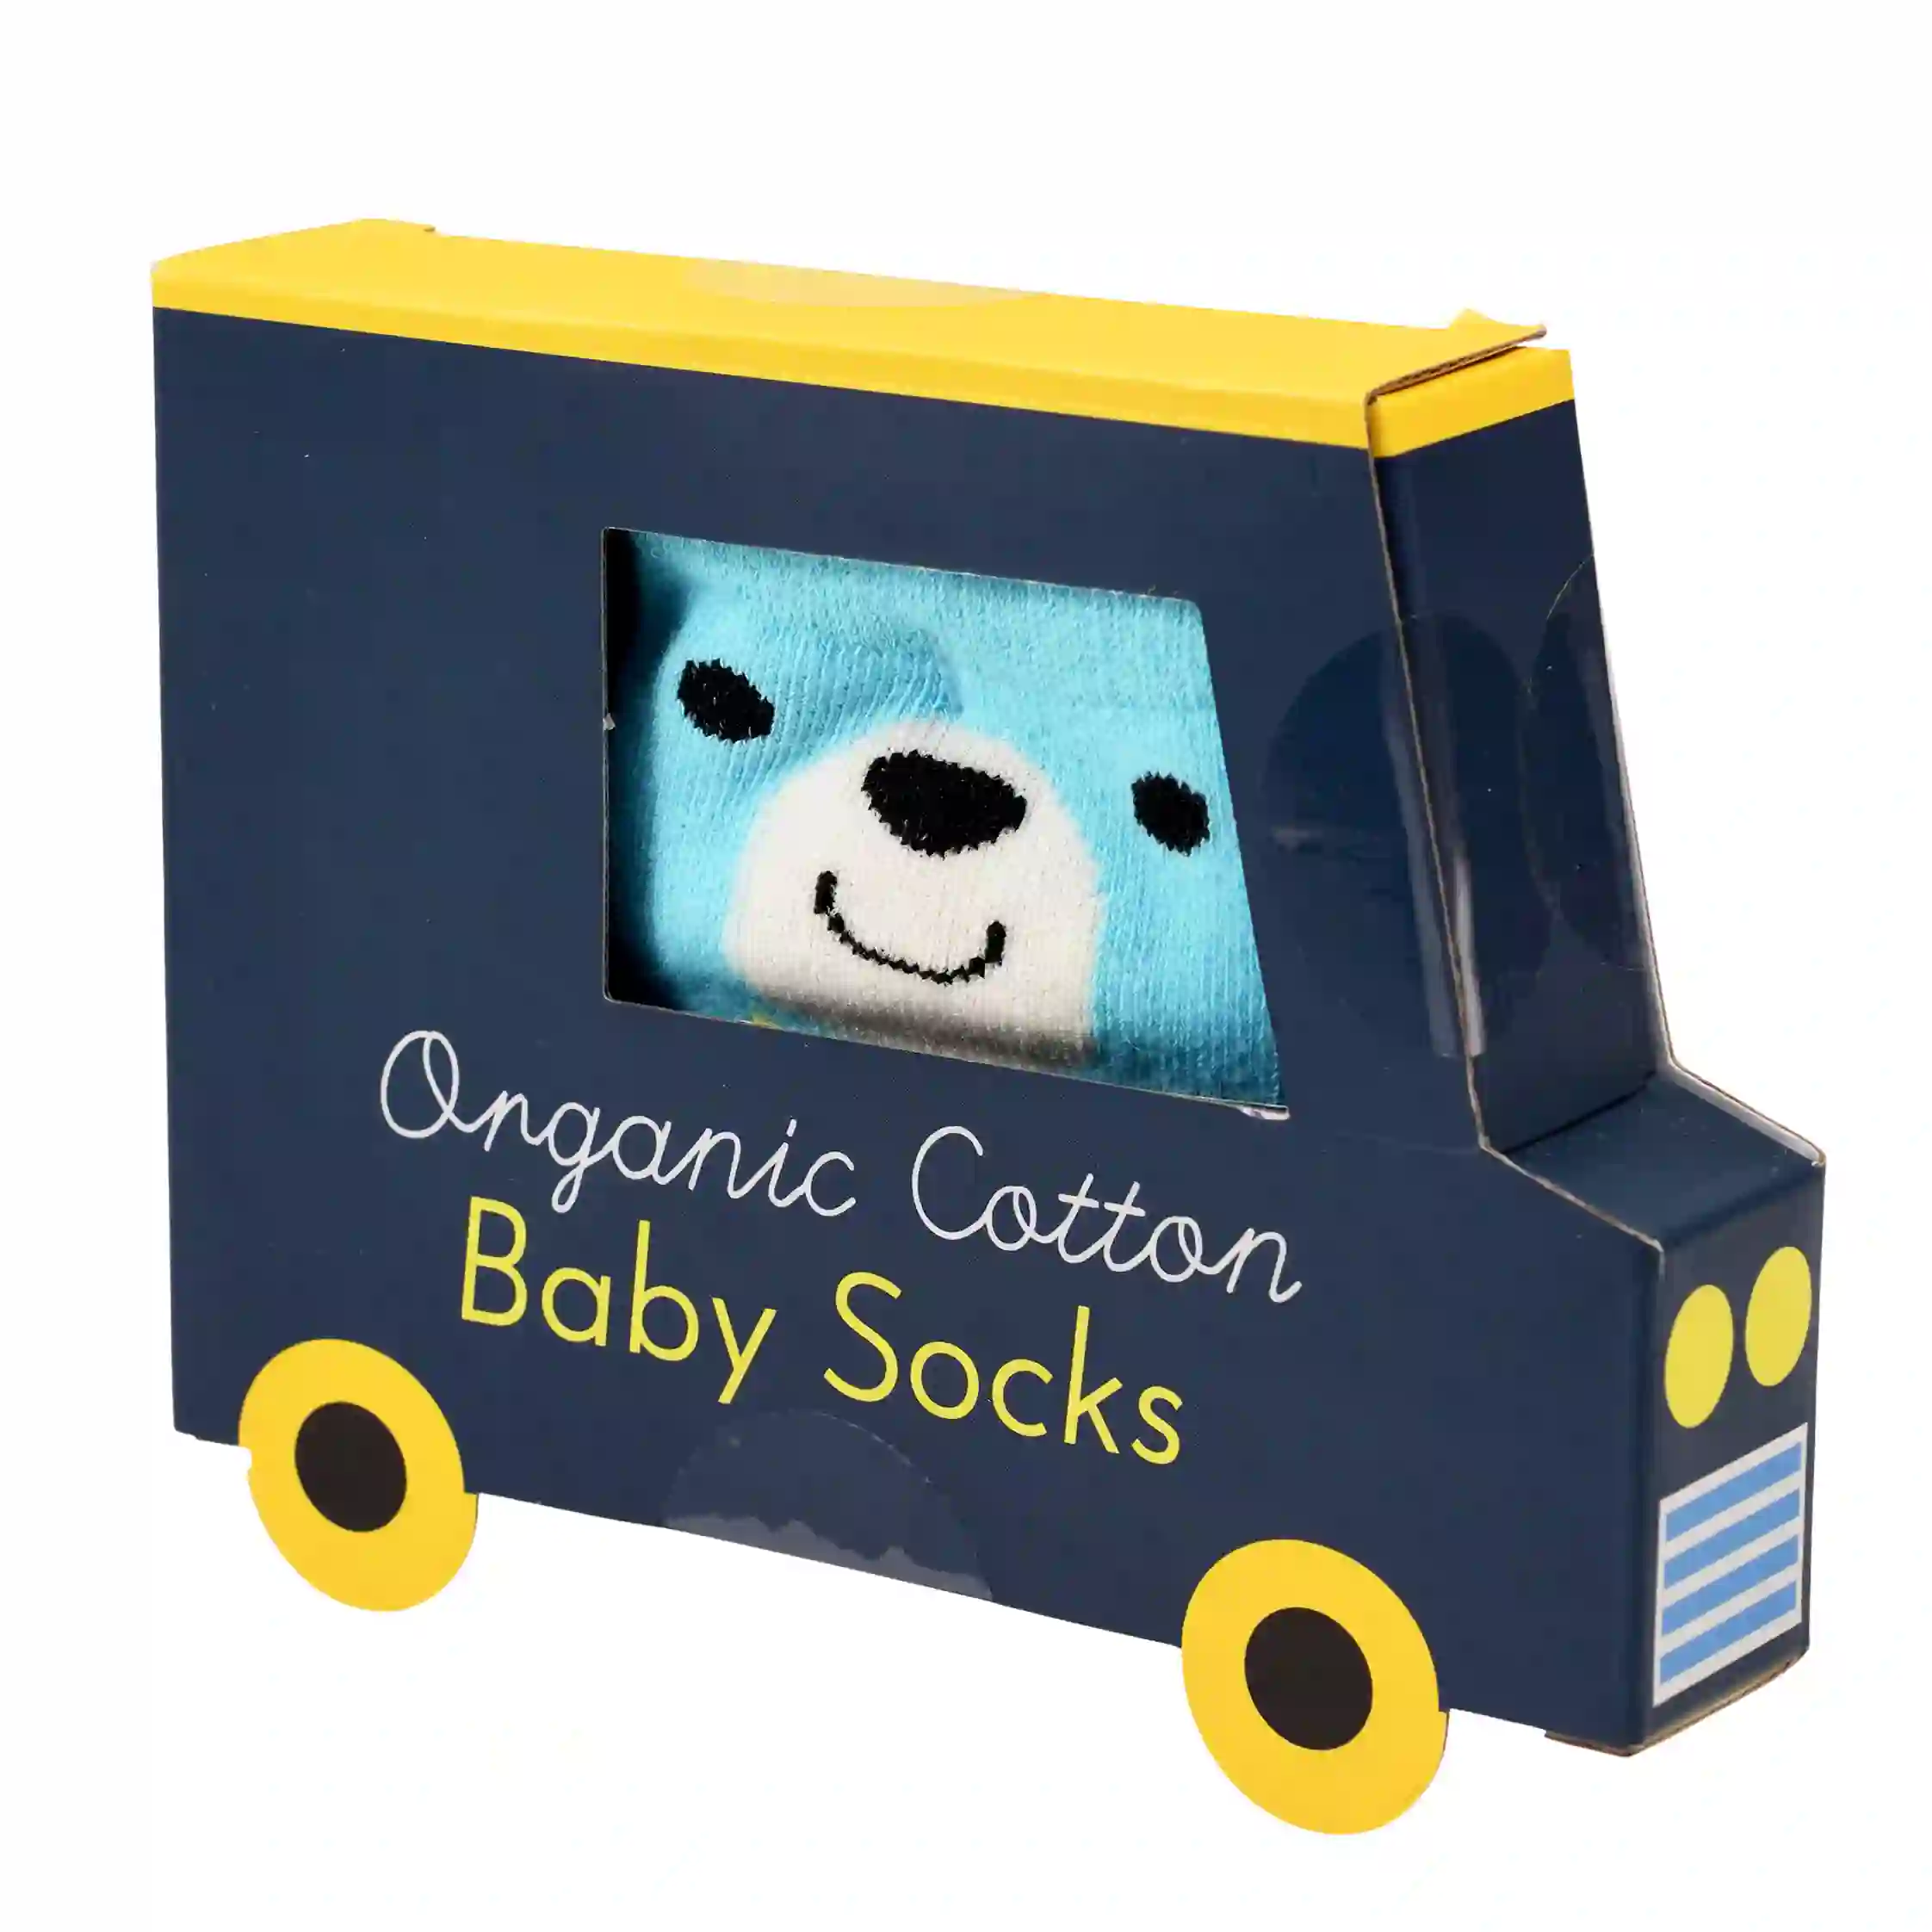 chaussettes bébé blue bear (une paire)